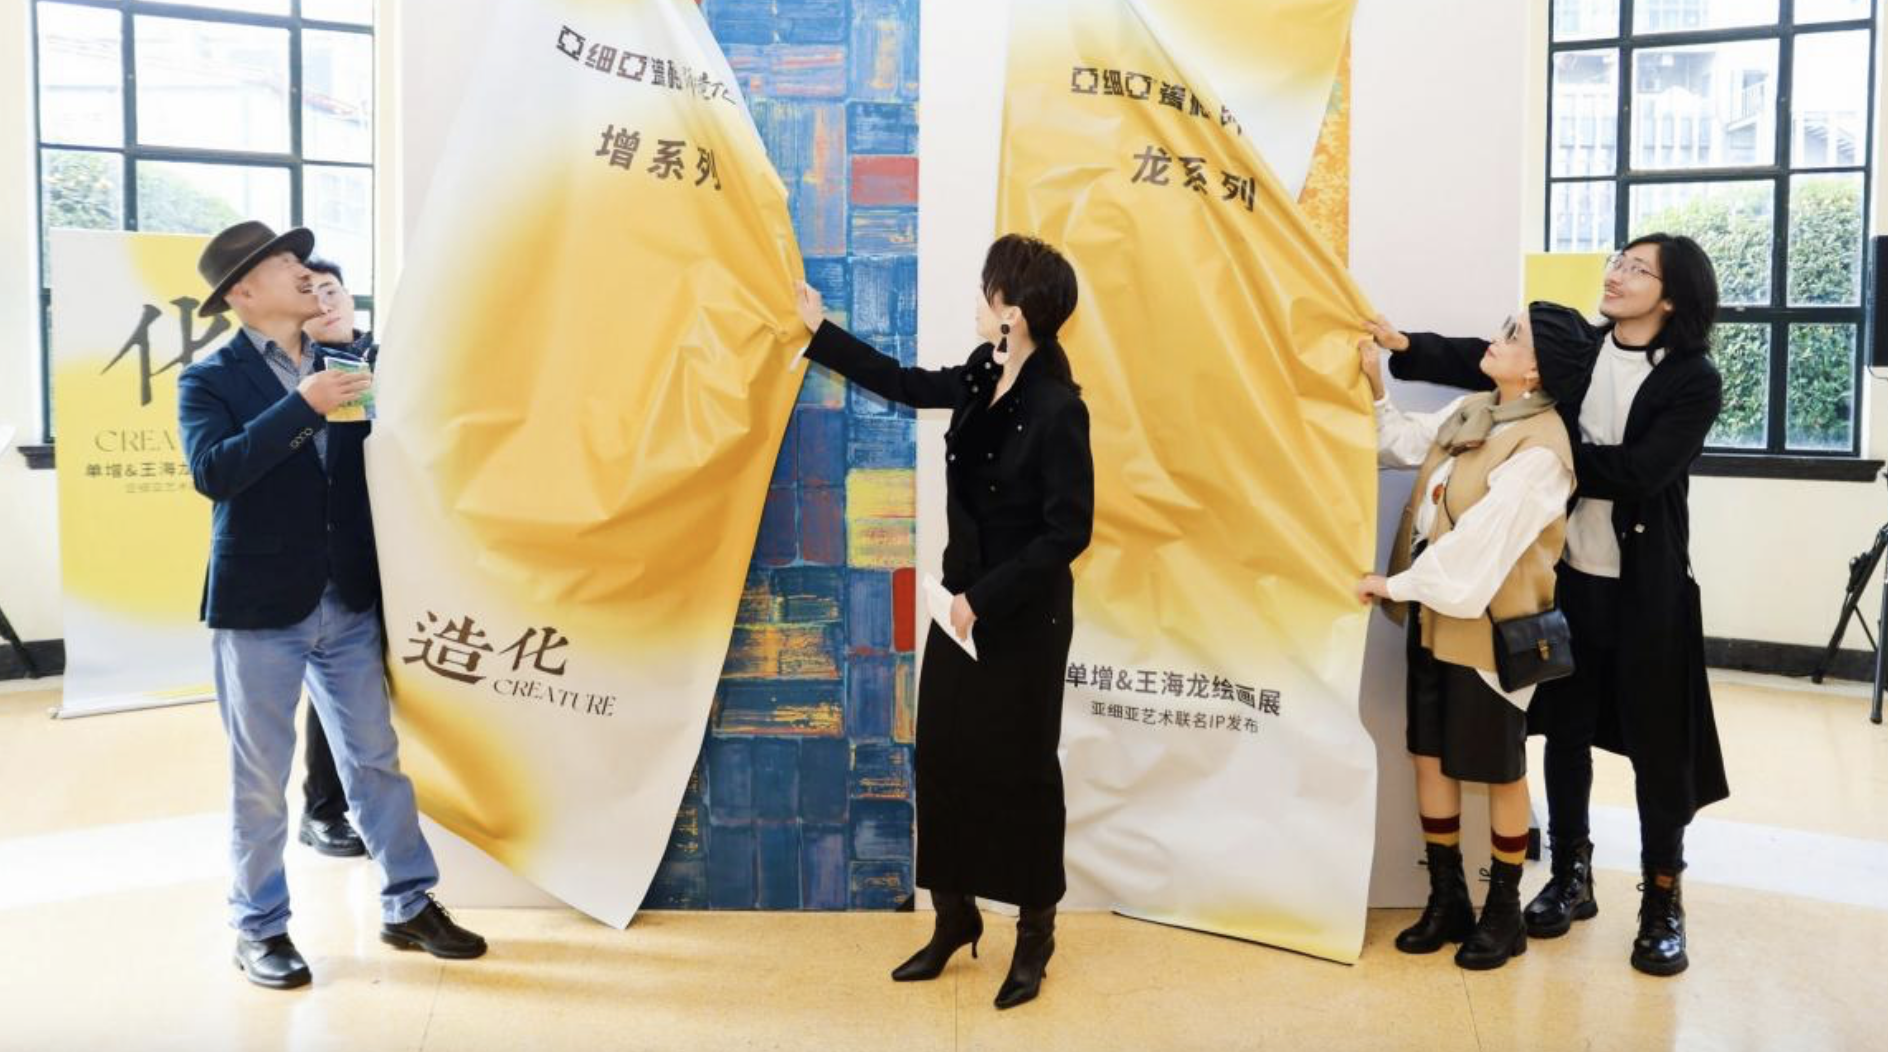 12月9日，「单增 & 王海龙当代绘画展暨亚细亚艺术联名IP发布」活动在上海展览中心盛大举行！本次的跨界融合盛会呈现了两位艺术家近期创作的油画、版画作品20余幅...